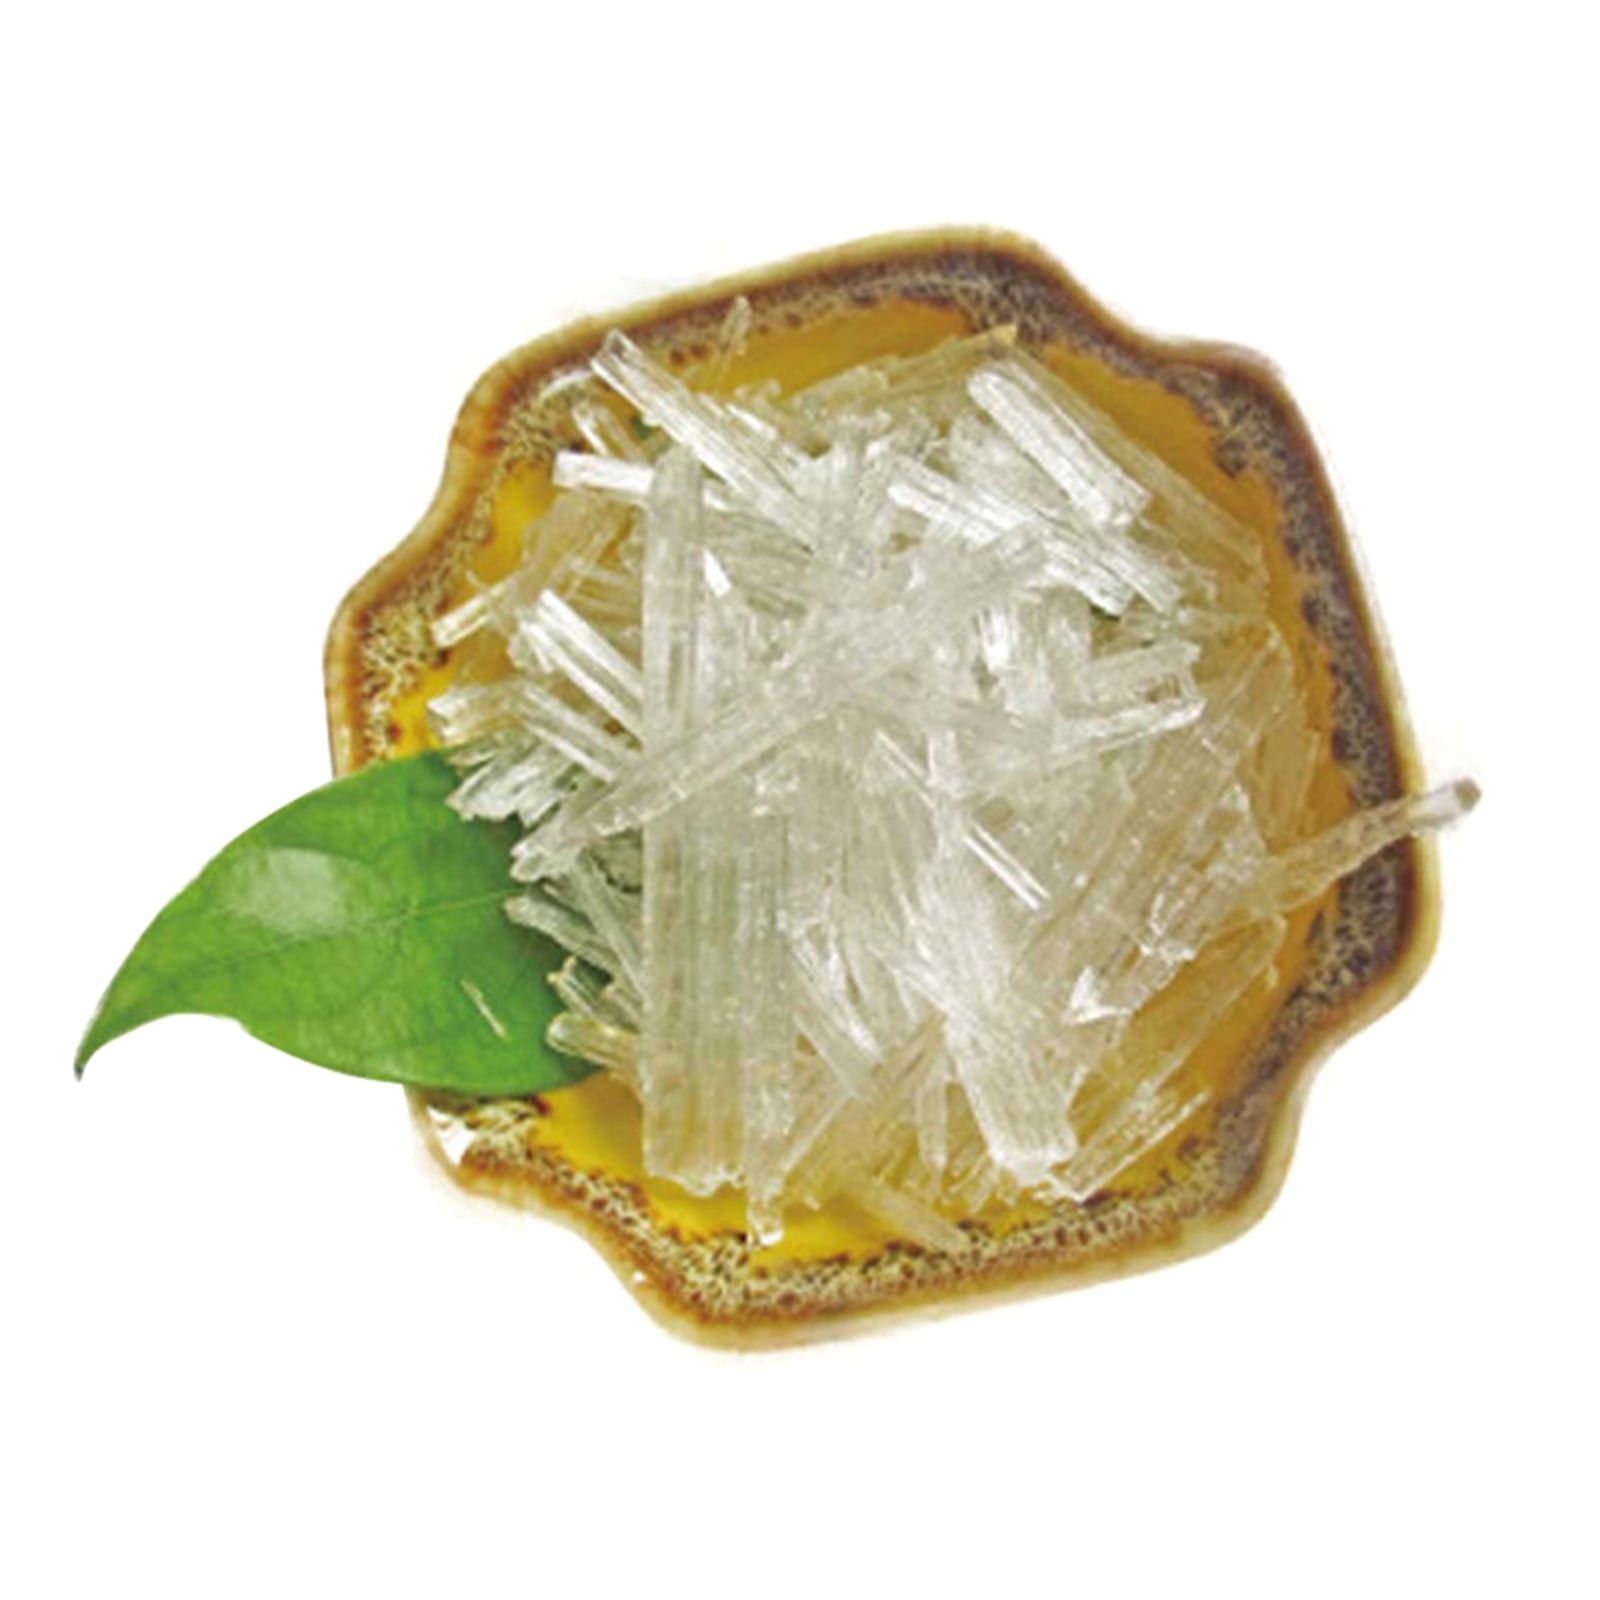 Mint crystals, 100% pure crystals – SHOP MARKET AFRICA